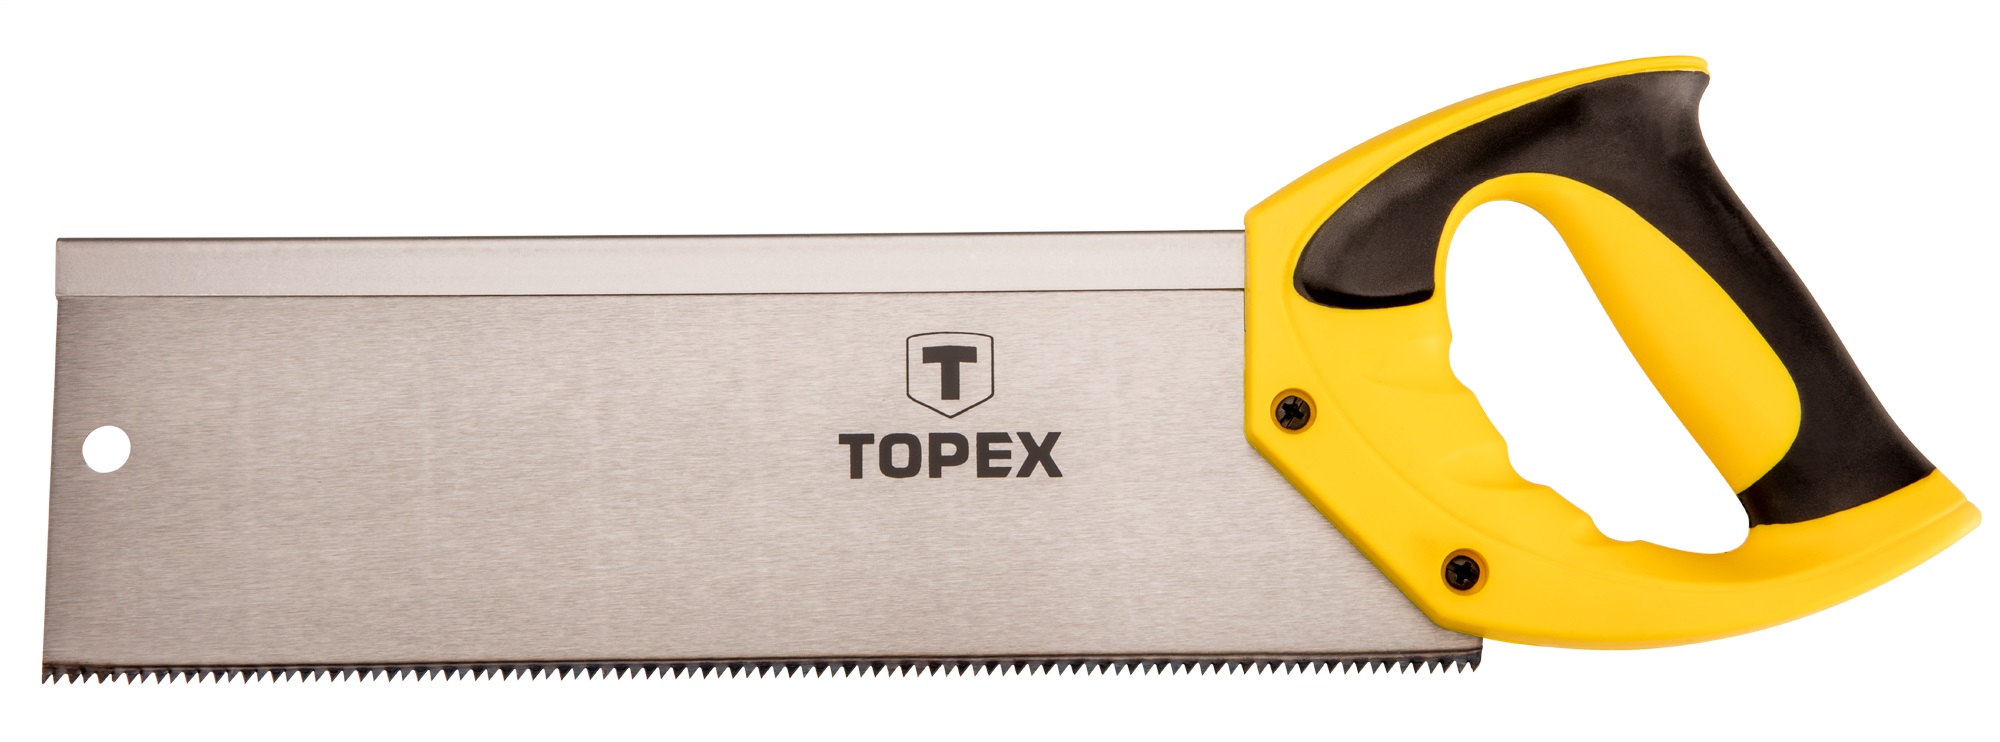 Инструкция ножовка по дереву Topex 10A706 350 мм, 13TPI (10A706)